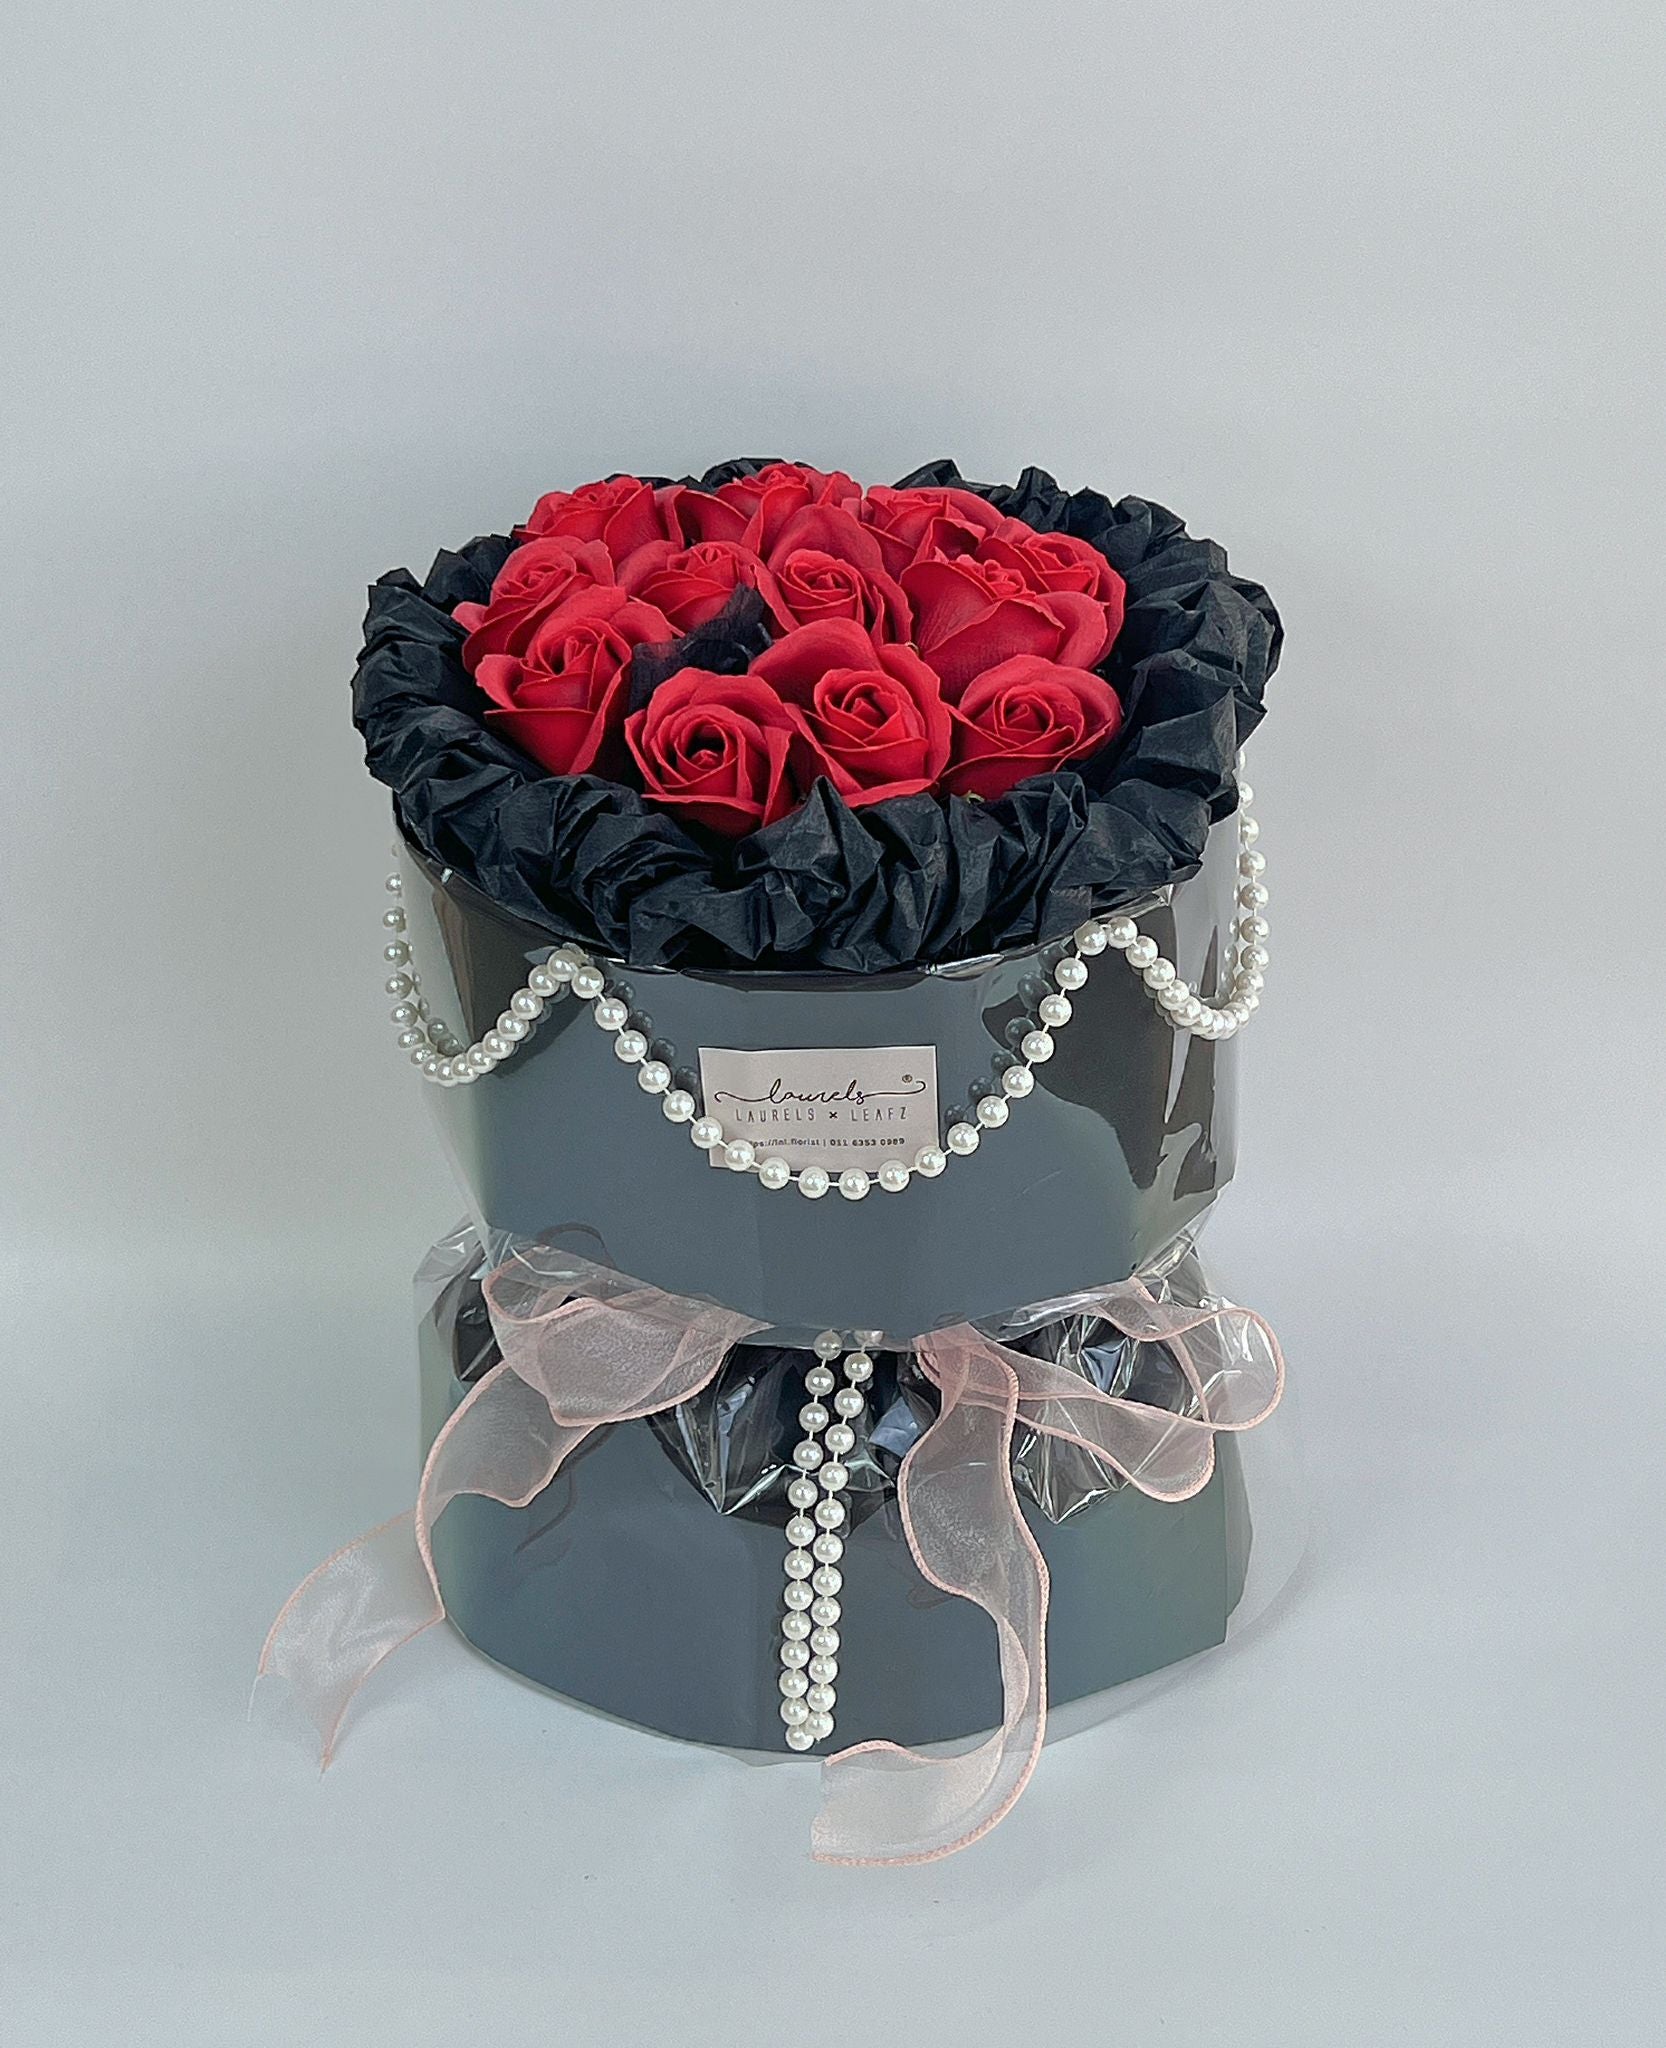 Valentine's Day Special Promotion - Black Romance Rose Bouquet | LnL Florist